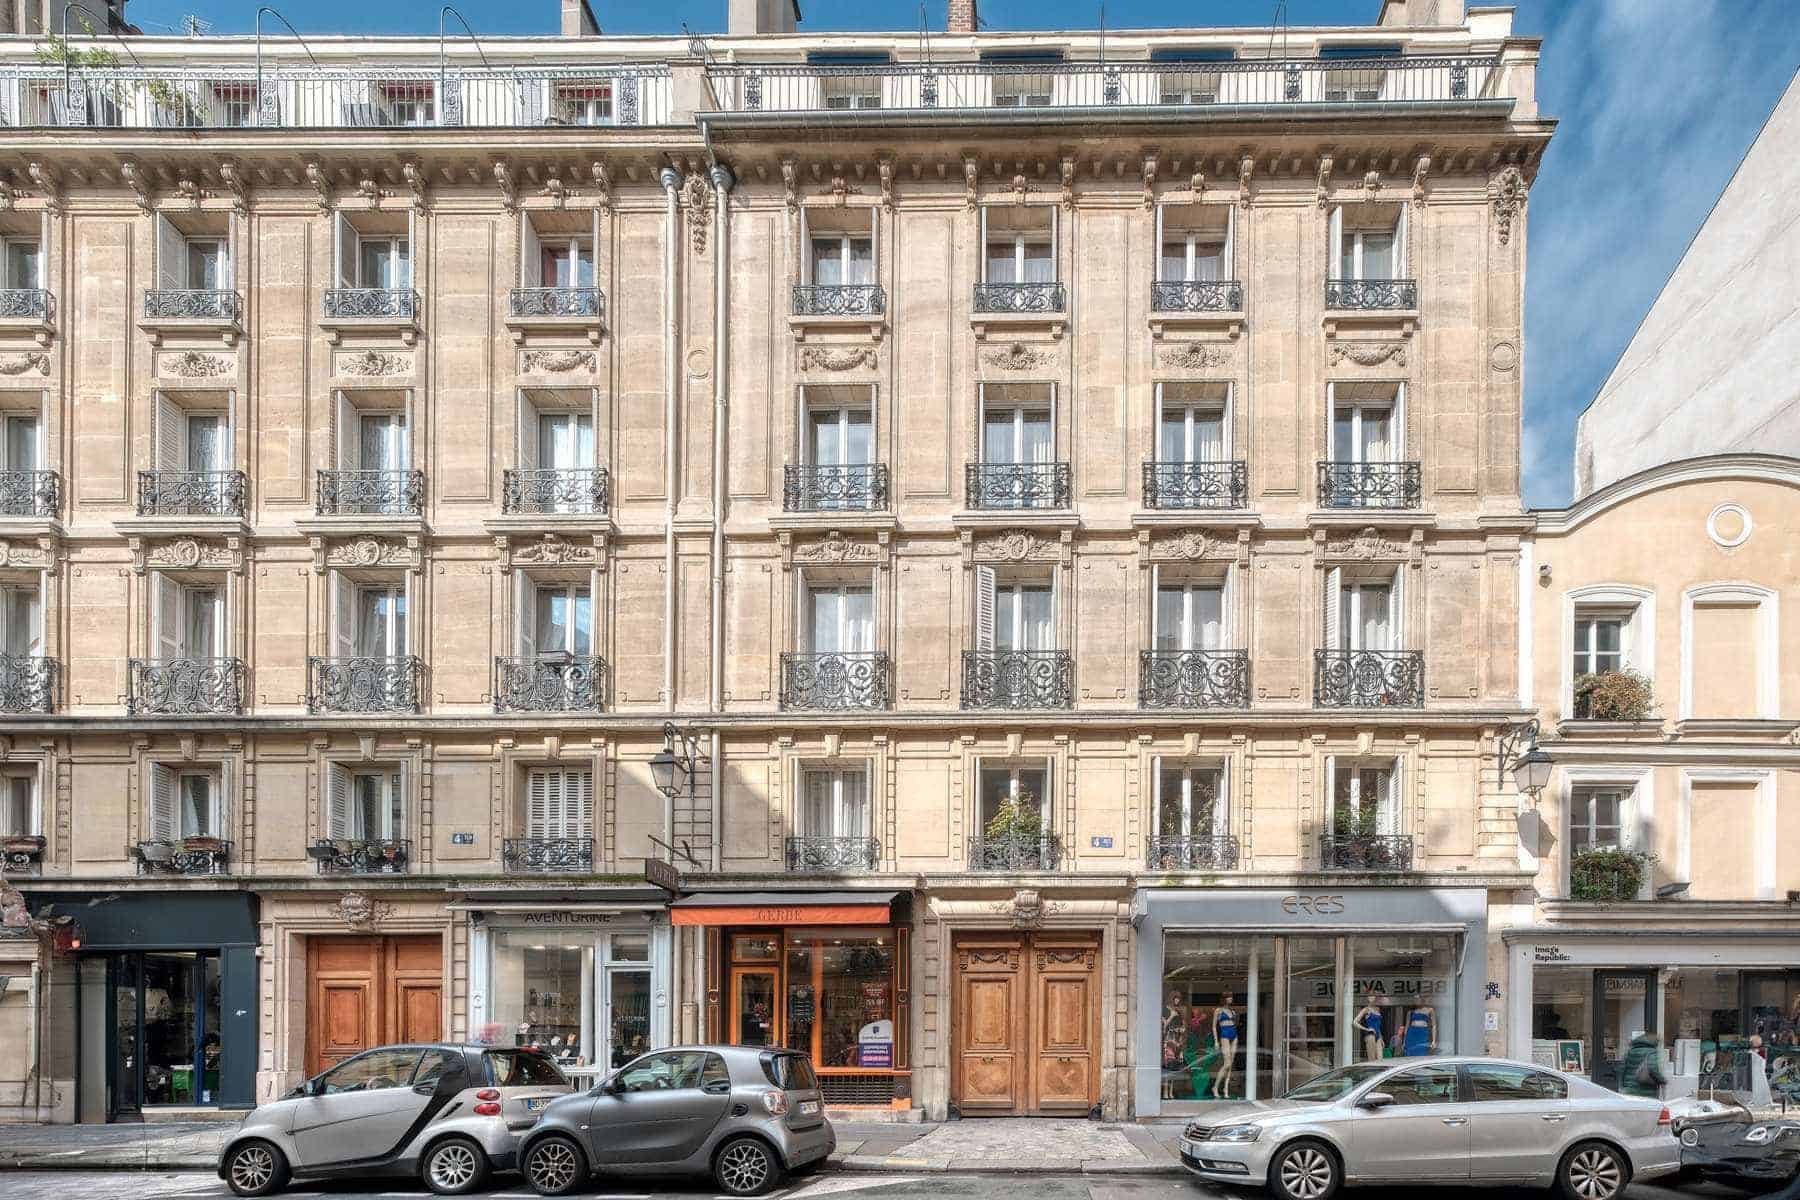 Saint-Germain-des-Prés Apartment for Sale: Luxurious Parisian Living Awaits